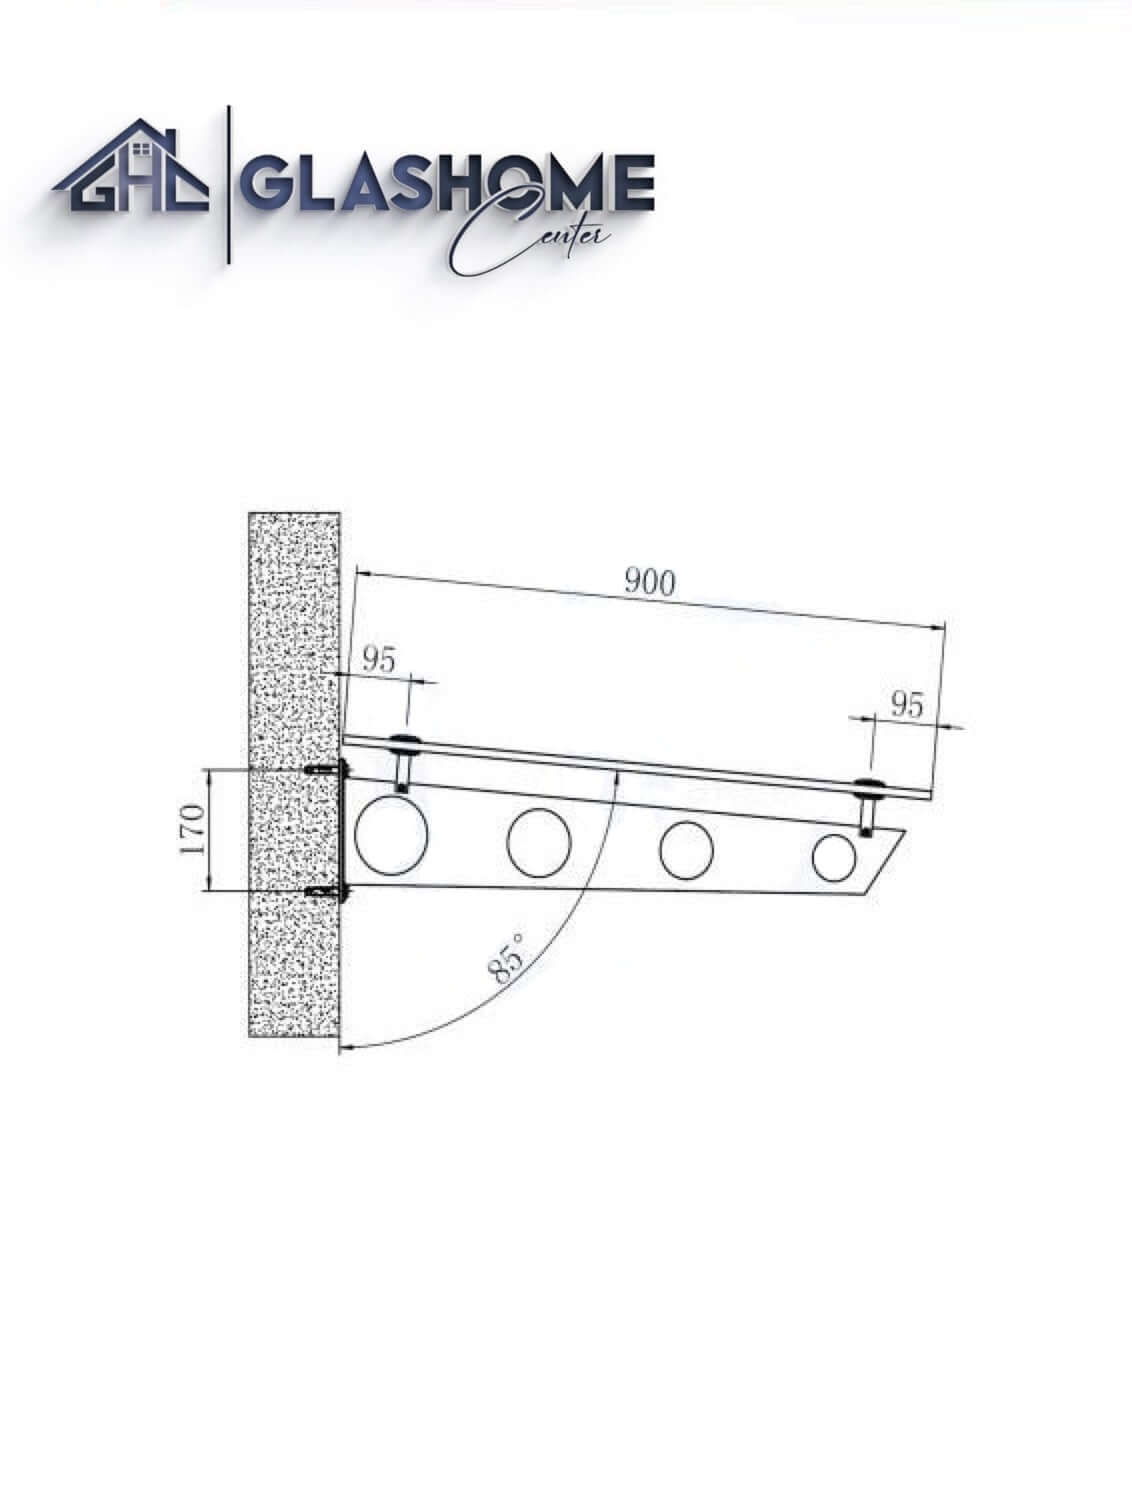 GlasHomeCenter - Glasvordach - Grauglas - 180x90cm - 13,1mm VSG - incl. 2 varianti Edelstahlhalterungen nere "Stoccolma"